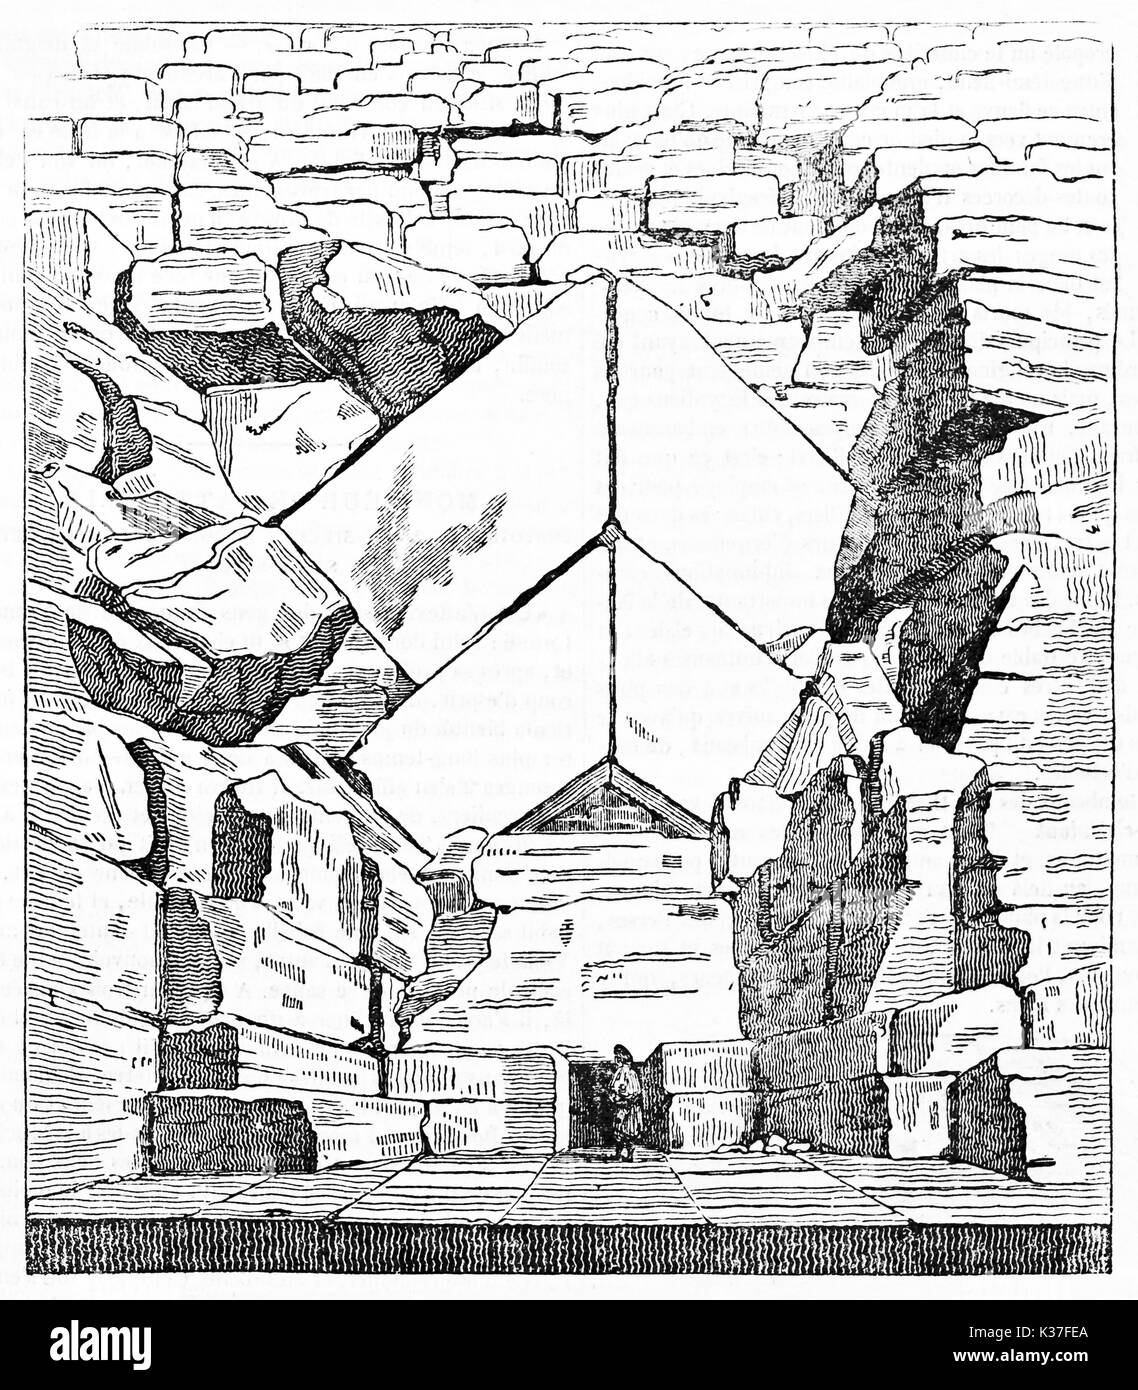 L'ancienne vue majestueuse de l'entrée de la grande pyramide de Gizeh Égypte. Petite personne, contre les pierres de grande taille. Vieille Illustration d'auteur non identifié, le Magasin pittoresque Paris 1834 Banque D'Images